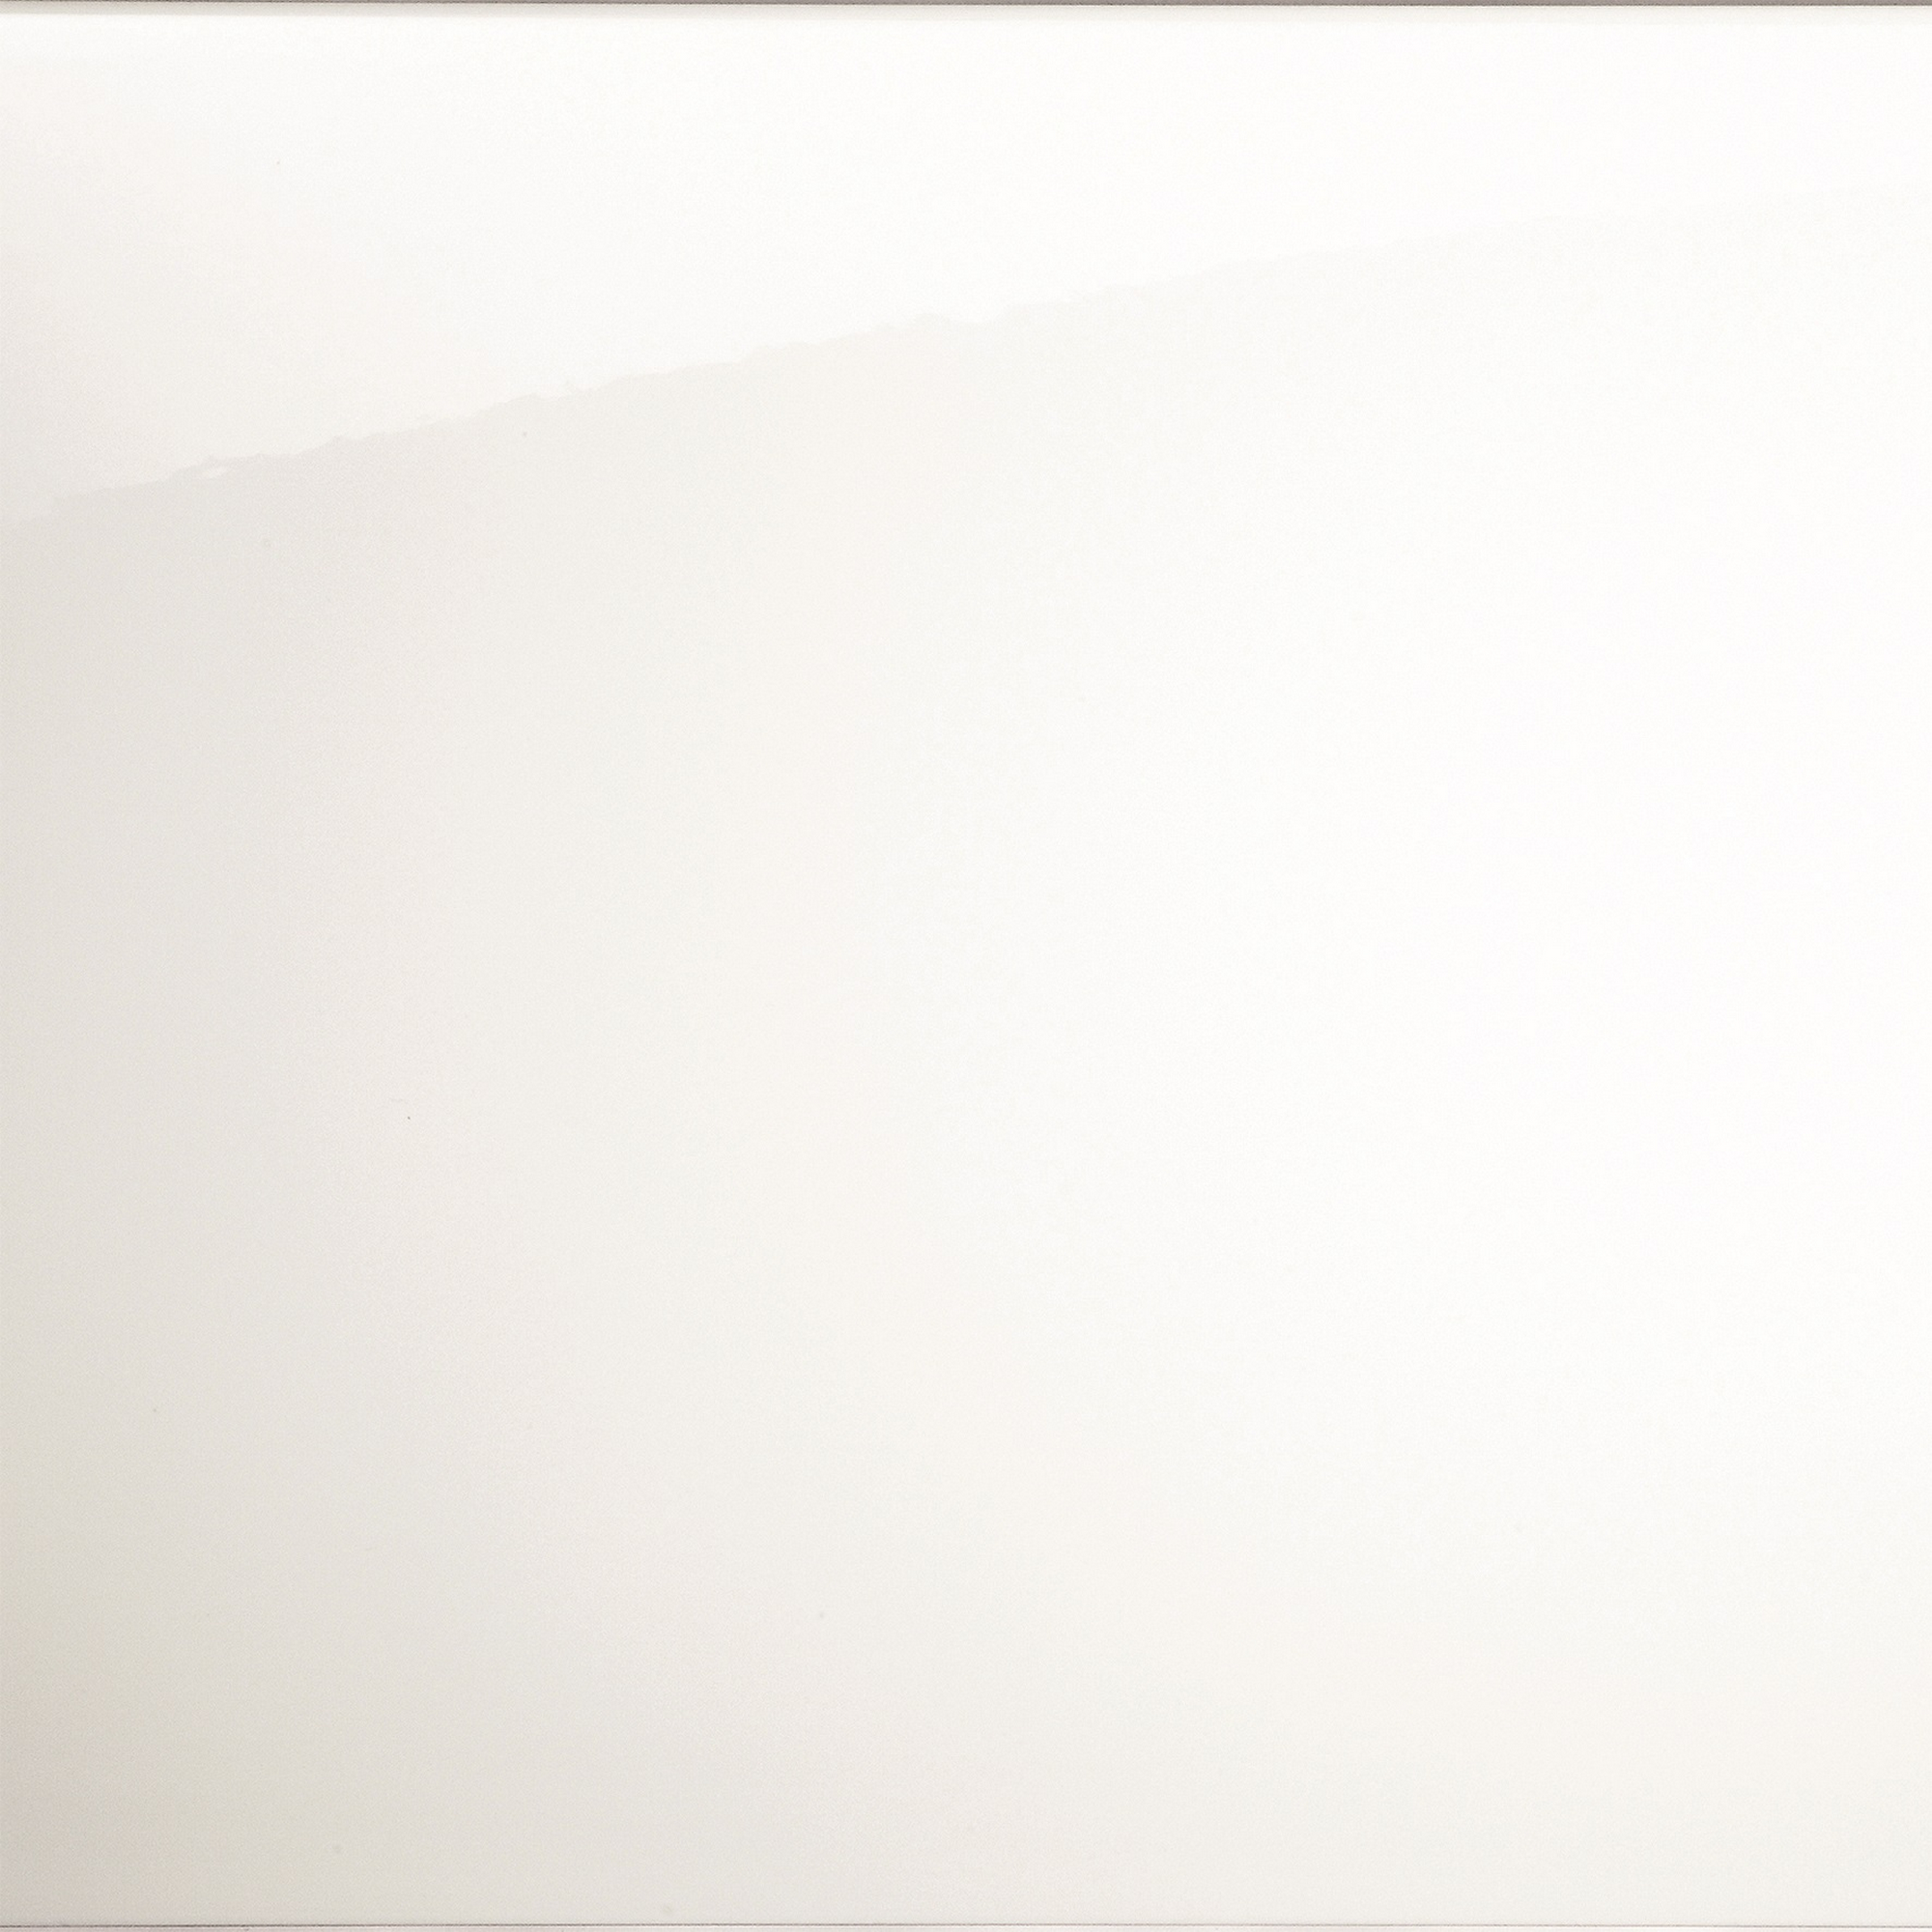 Wandfliese 'Jna' Steingut weiß glänzend 14,8 x 14,8 cm + product picture